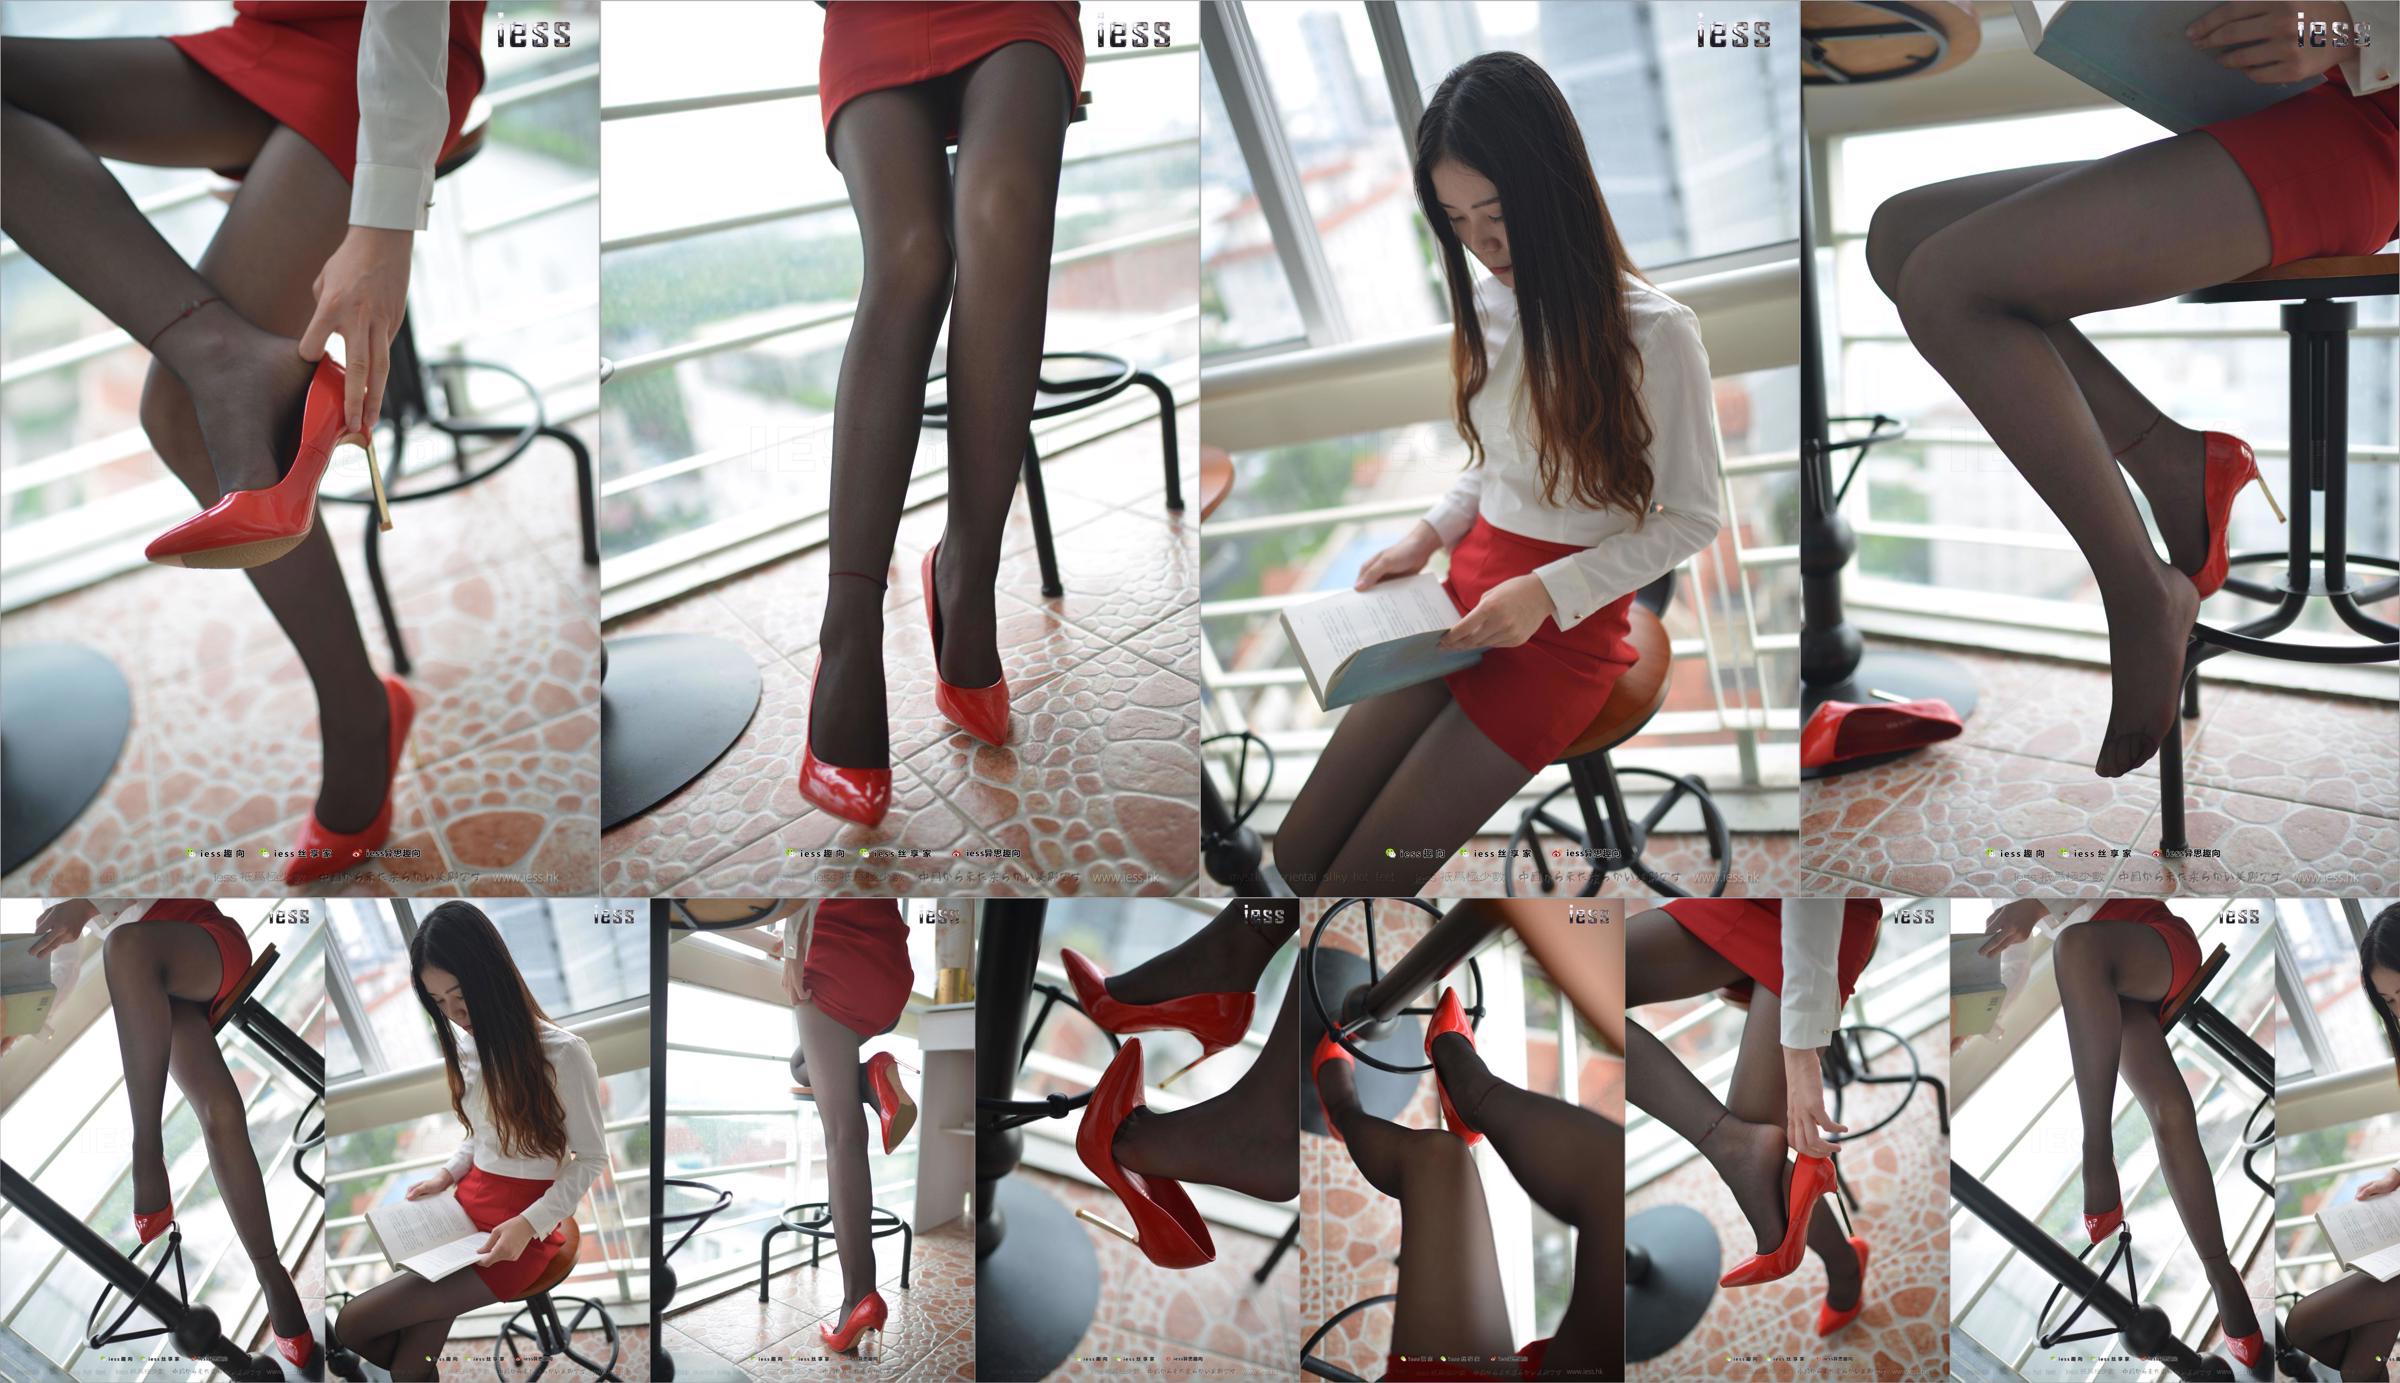 Silk Foot Bento 147 Concubine "Красный высокий, черный шелк и красное платье" [IESS Weird Интересно] No.84d63d Страница 42